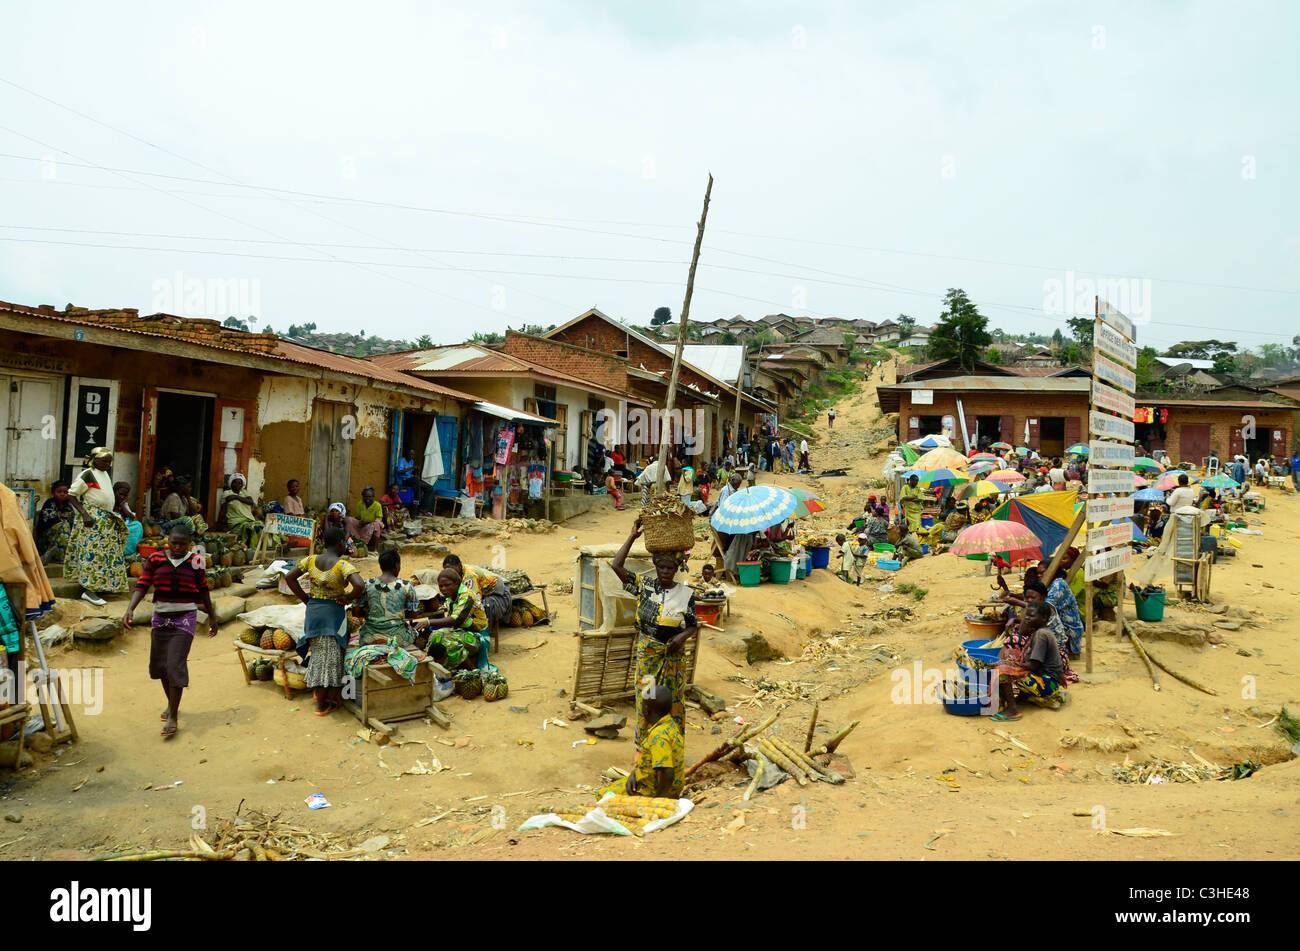 La scena del villaggio nella parte orientale della città di confine della Repubblica Democratica del Congo nel gennaio 2011. Foto Stock